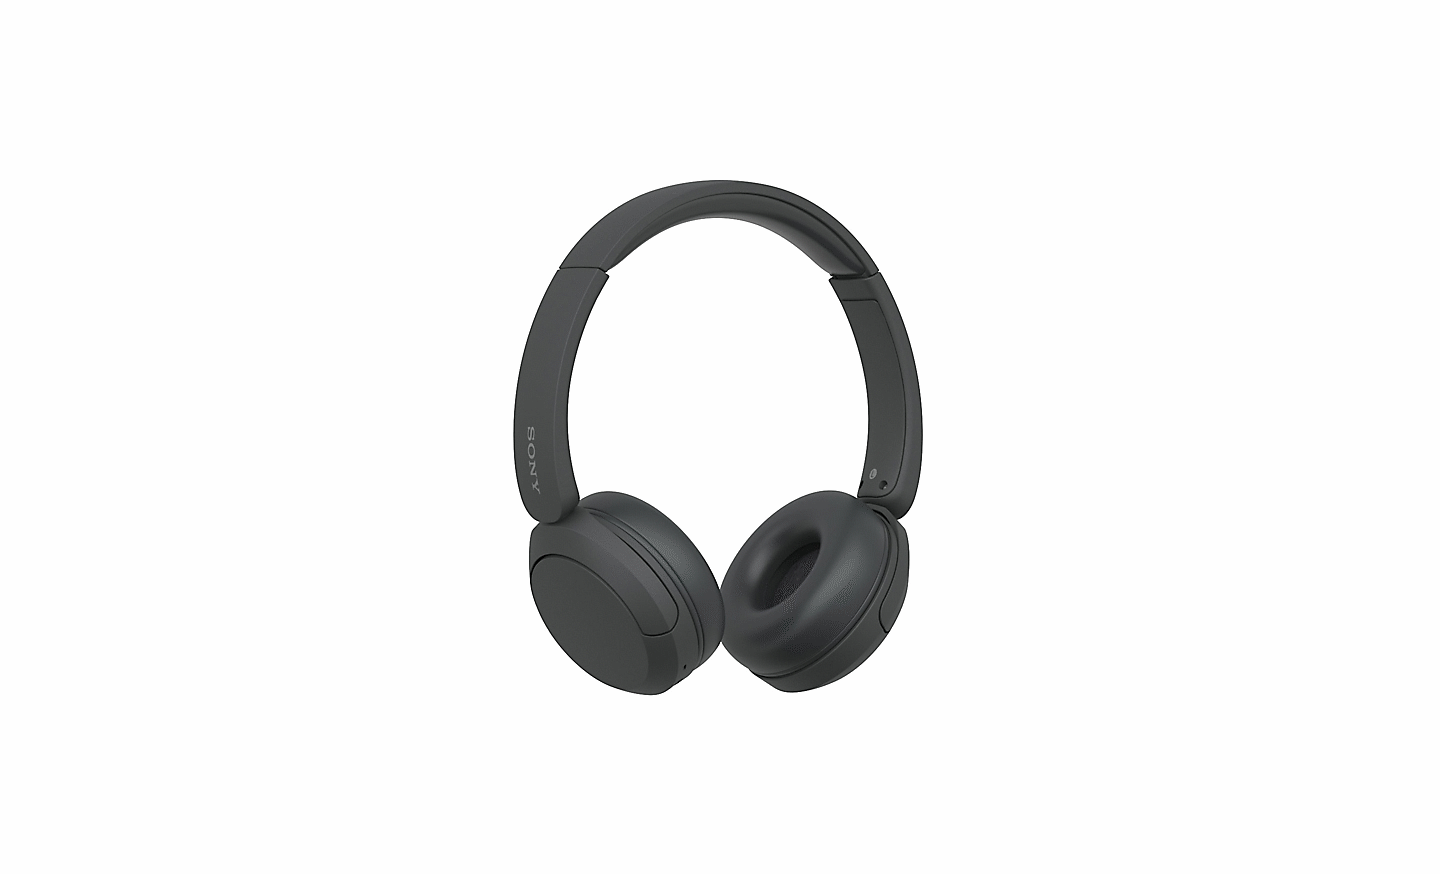 Immagine di un paio di cuffie WH-CH520 nere di Sony su sfondo bianco